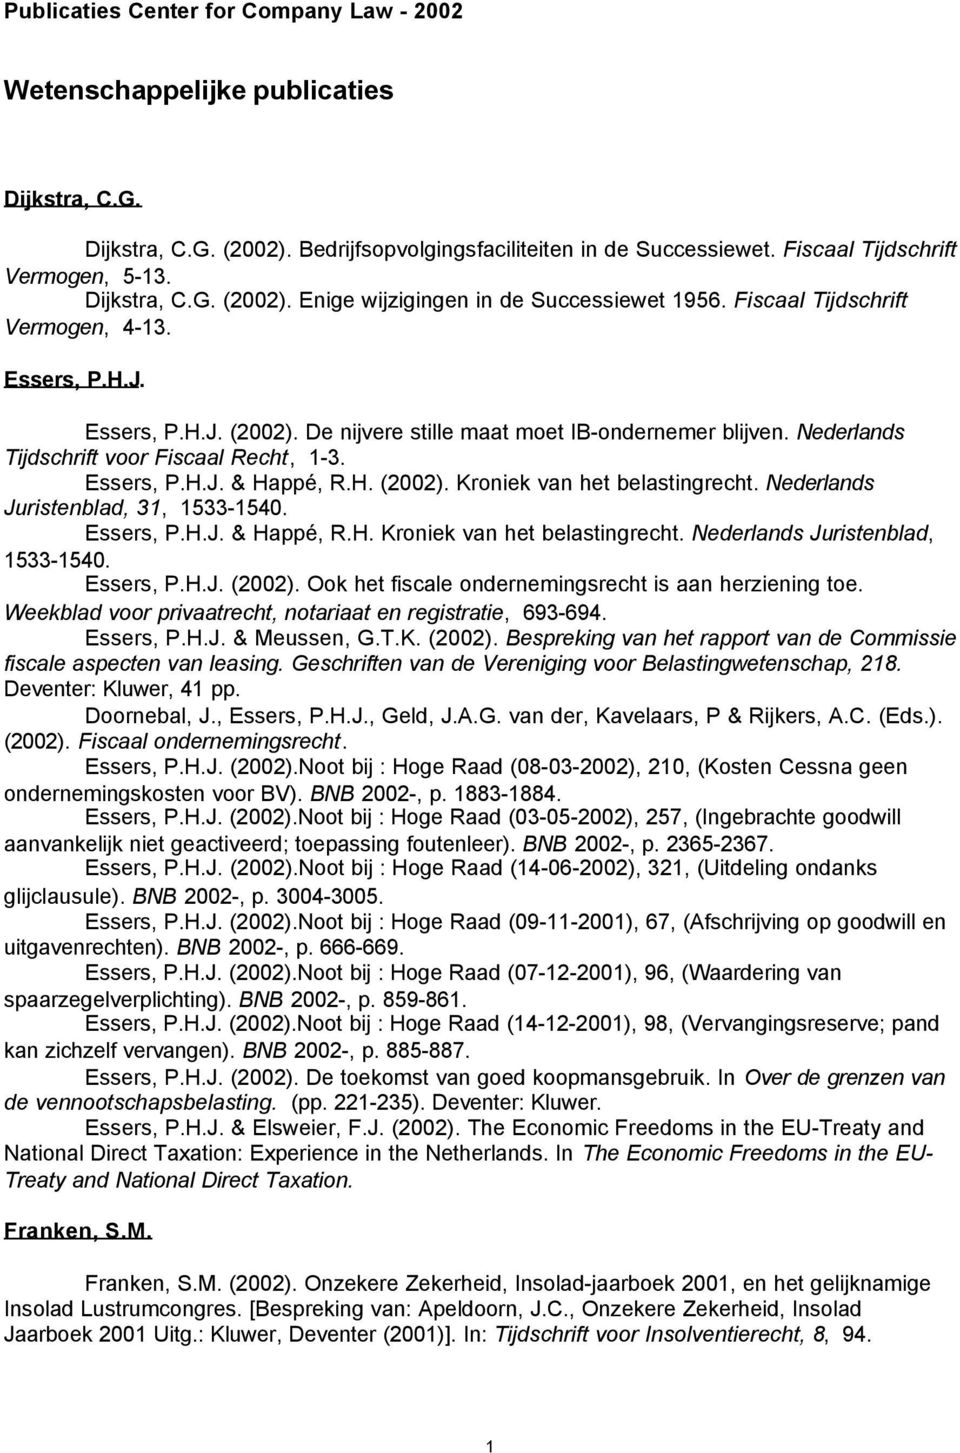 Nederlands Tijdschrift voor Fiscaal Recht, 1-3. Essers, P.H.J. & Happé, R.H. (2002). Kroniek van het belastingrecht. Nederlands Juristenblad, 31, 1533-1540. Essers, P.H.J. & Happé, R.H. Kroniek van het belastingrecht. Nederlands Juristenblad, 1533-1540.